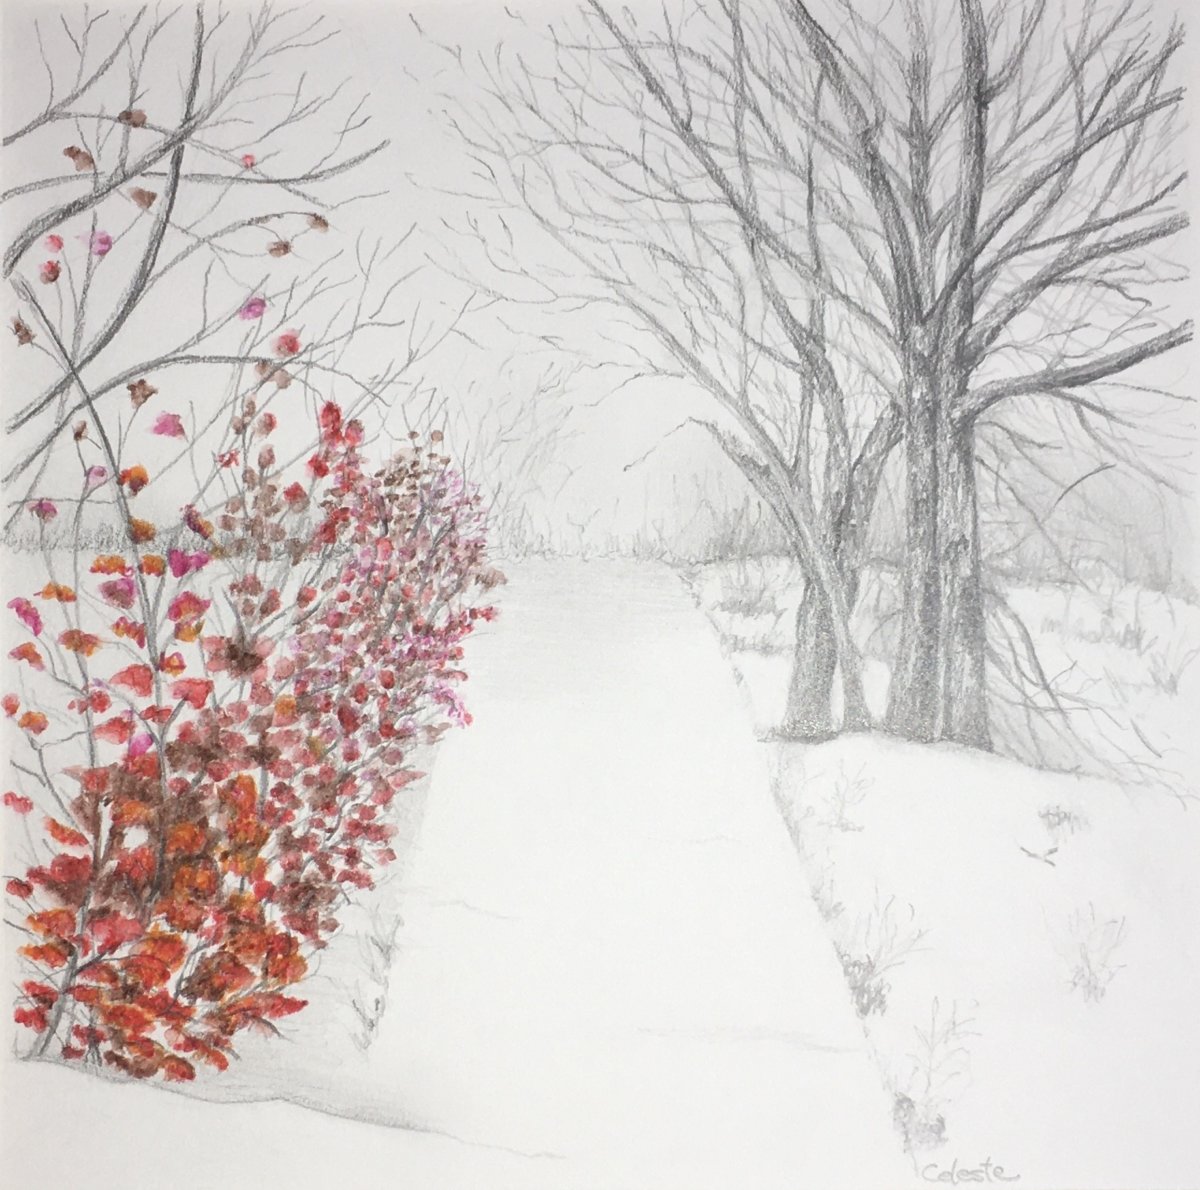 "A Winters Path" by Celeste Simonelli, Graphite and Pencil